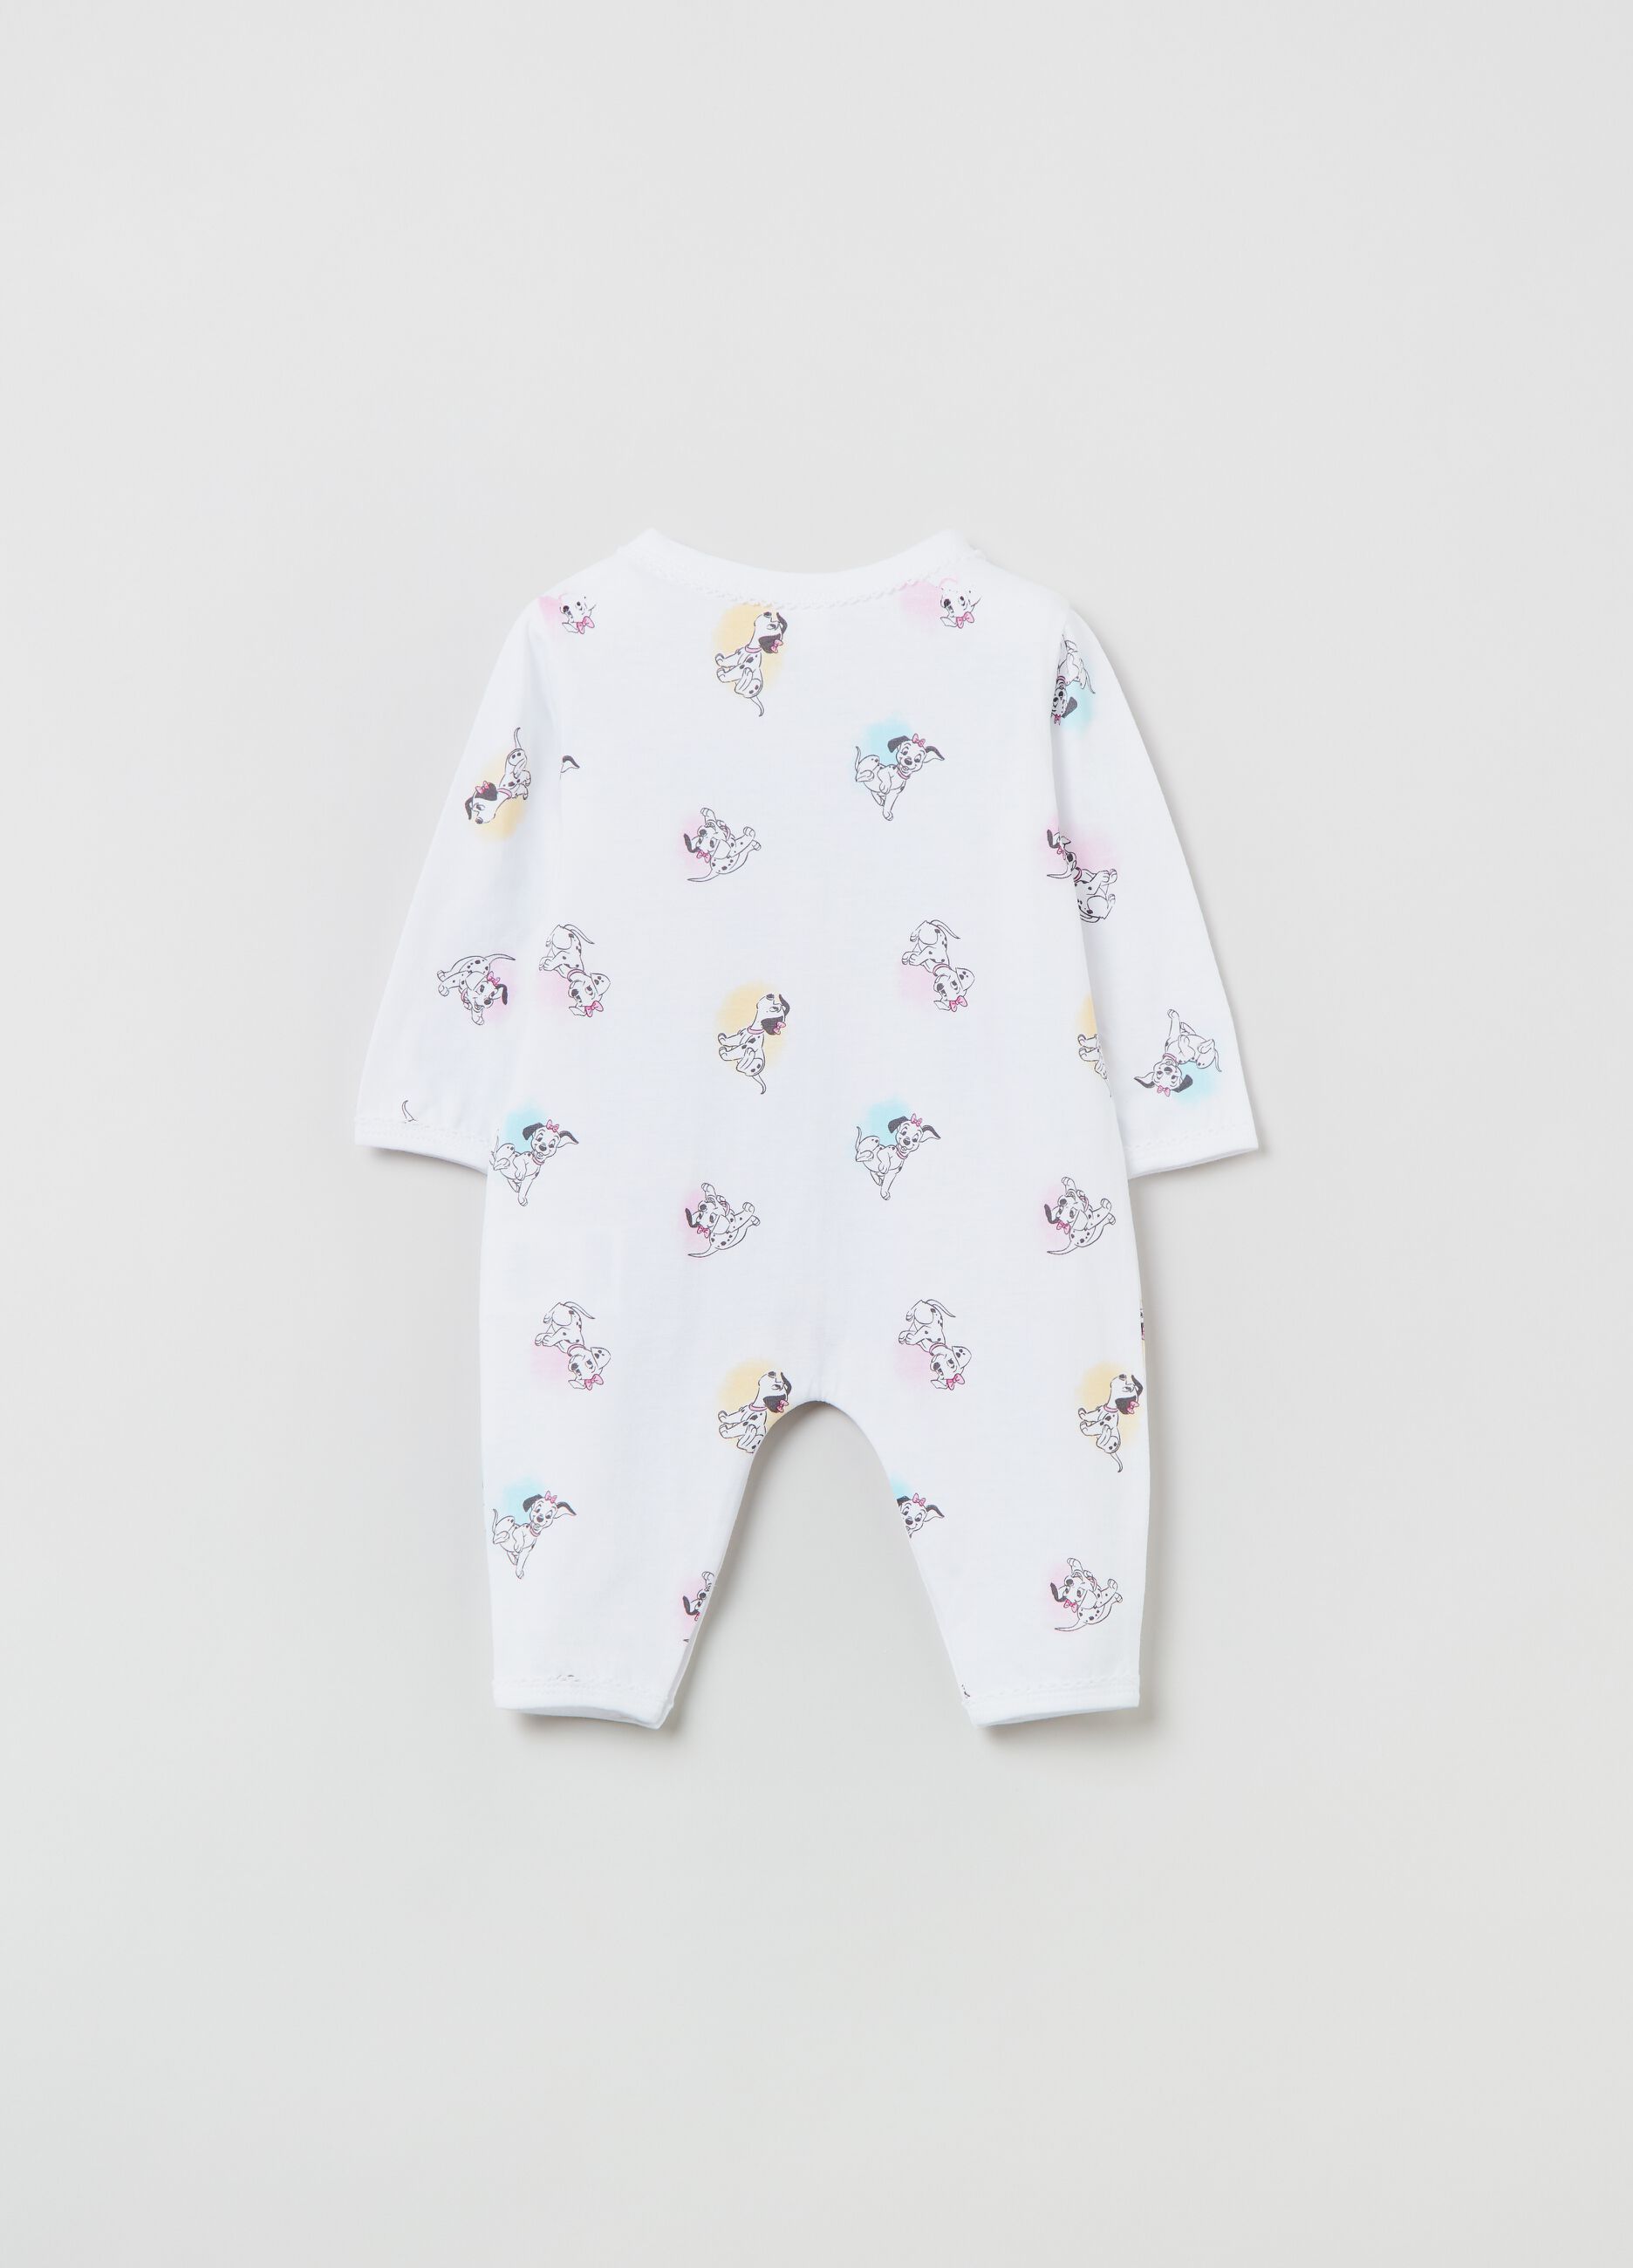 Disney Baby 101 Dalmatians one-piece romper suit_1